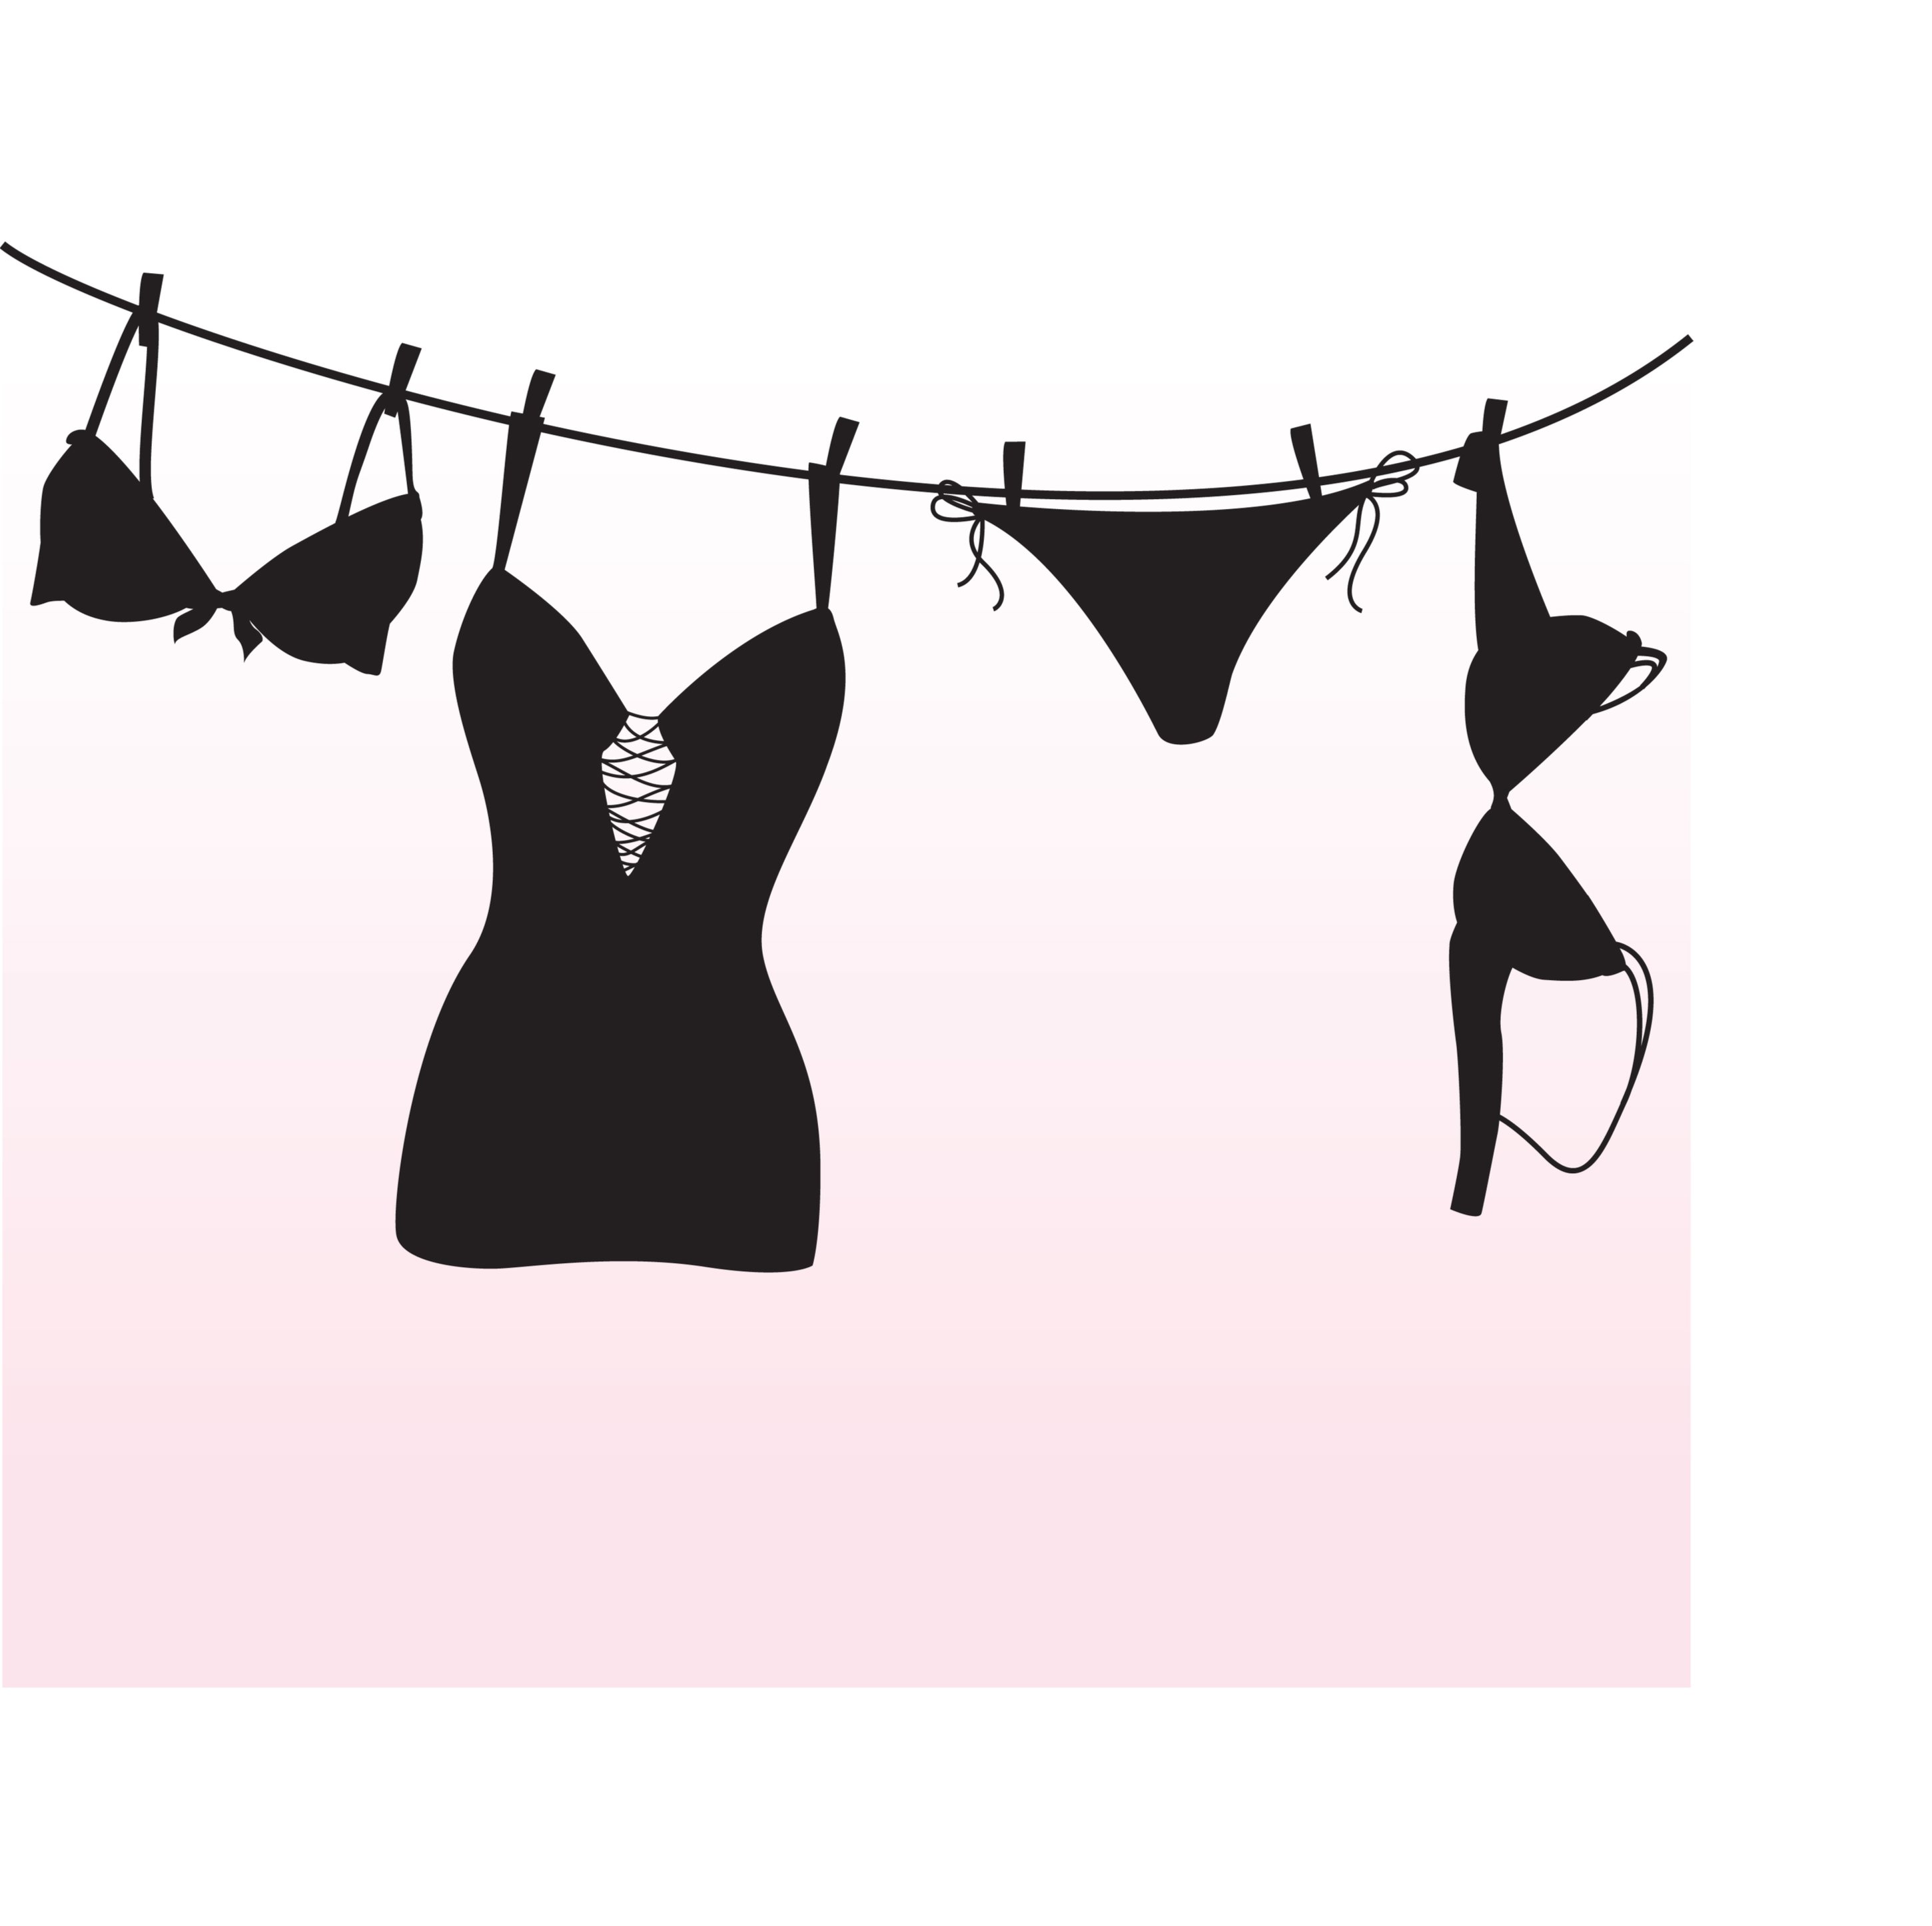 Image de lingerie féminine | Photo: Shutterstock